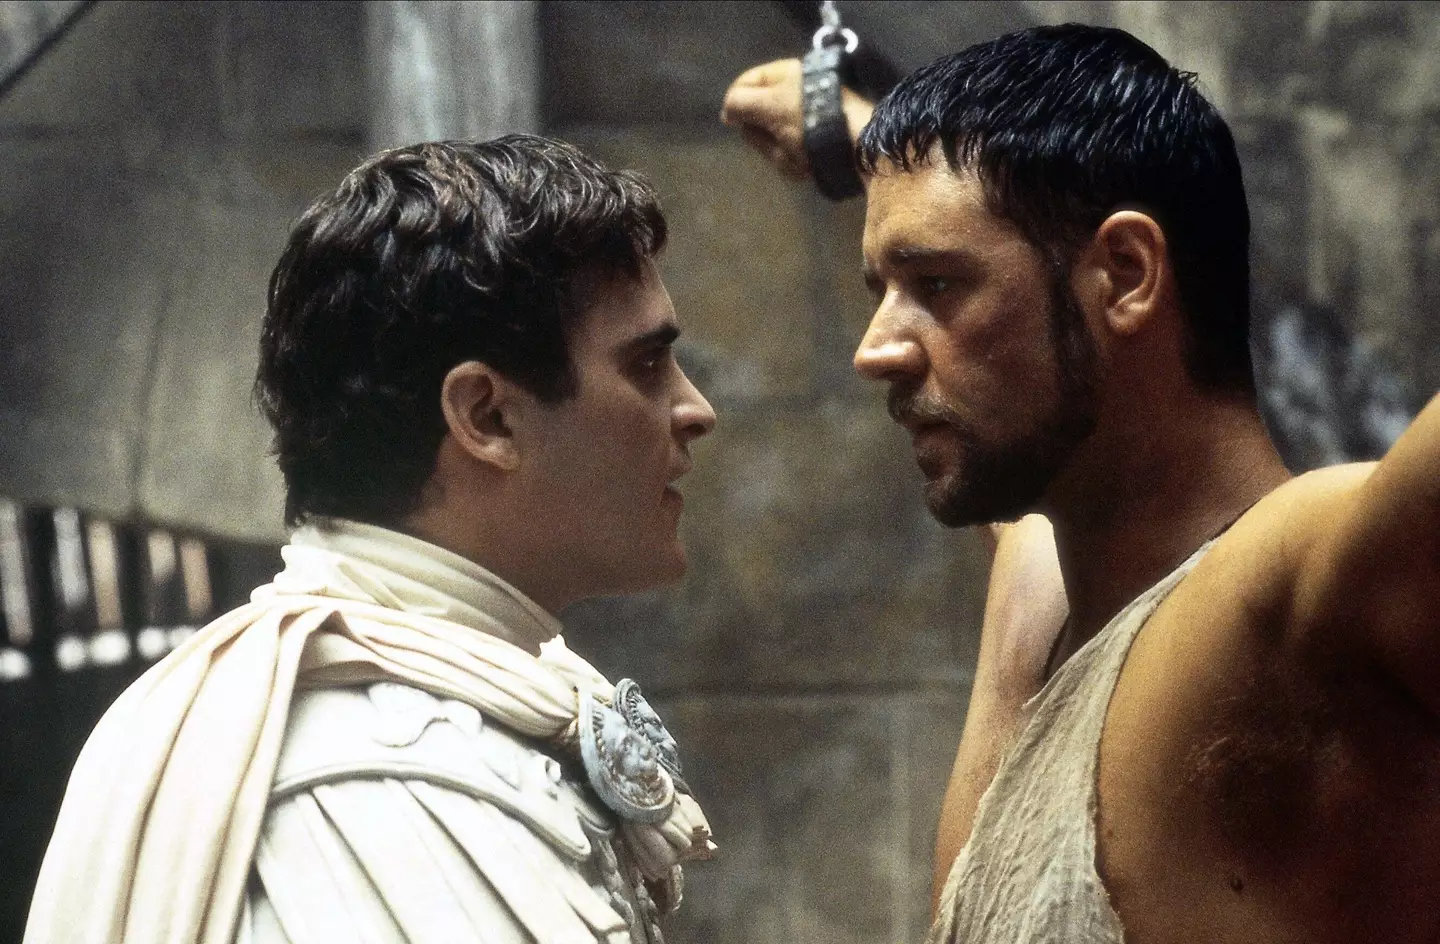 Commodus versus Maximus.